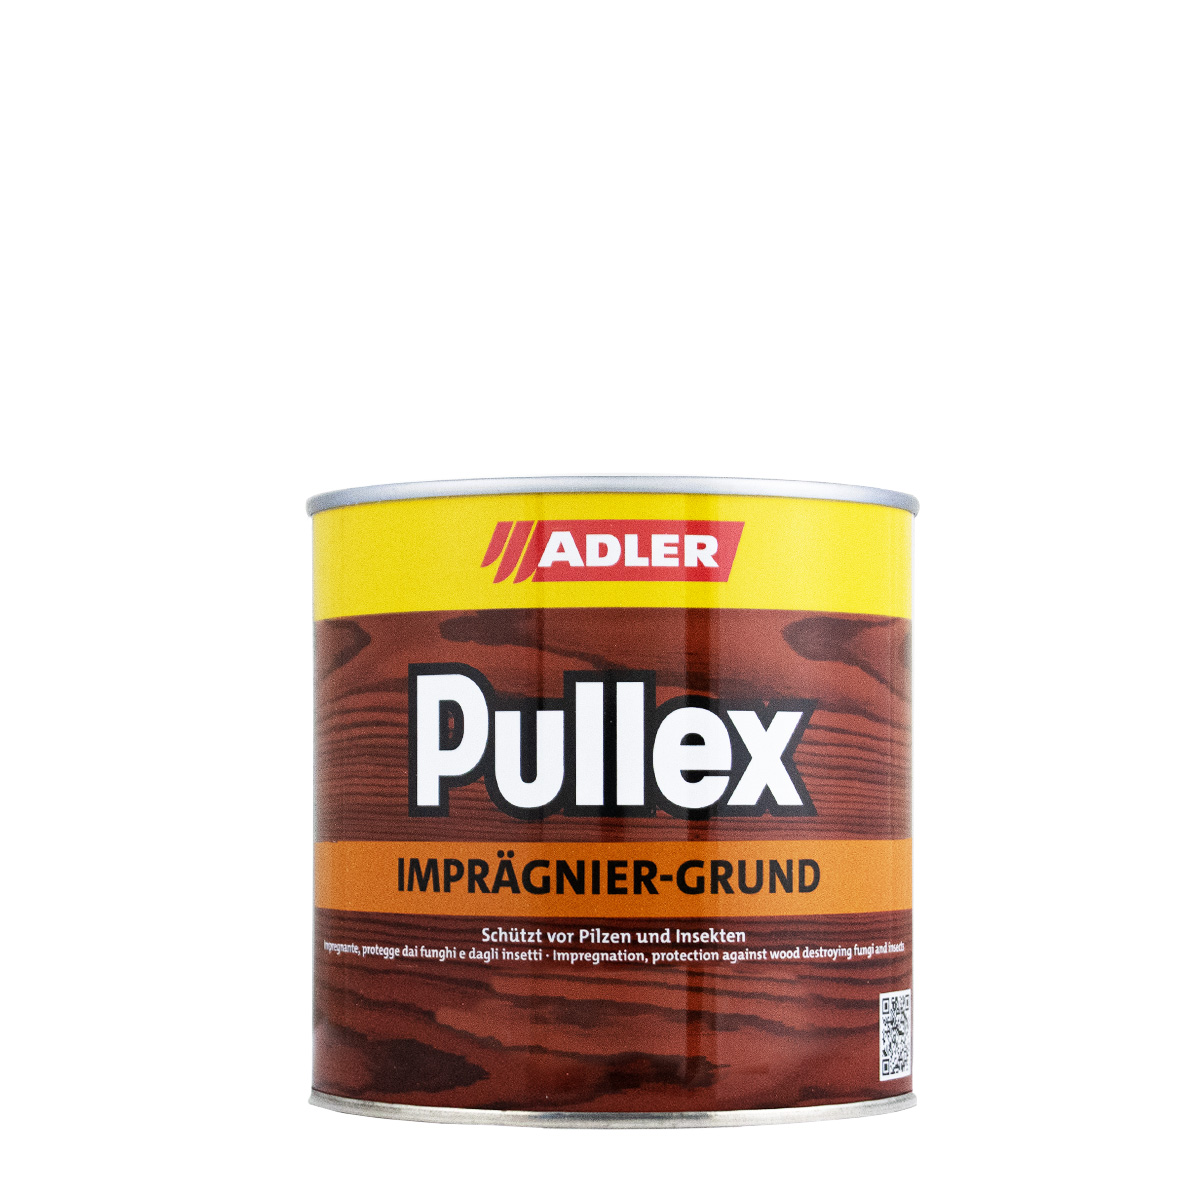 adler_pullex_impraegnier-grund_750ml_gross